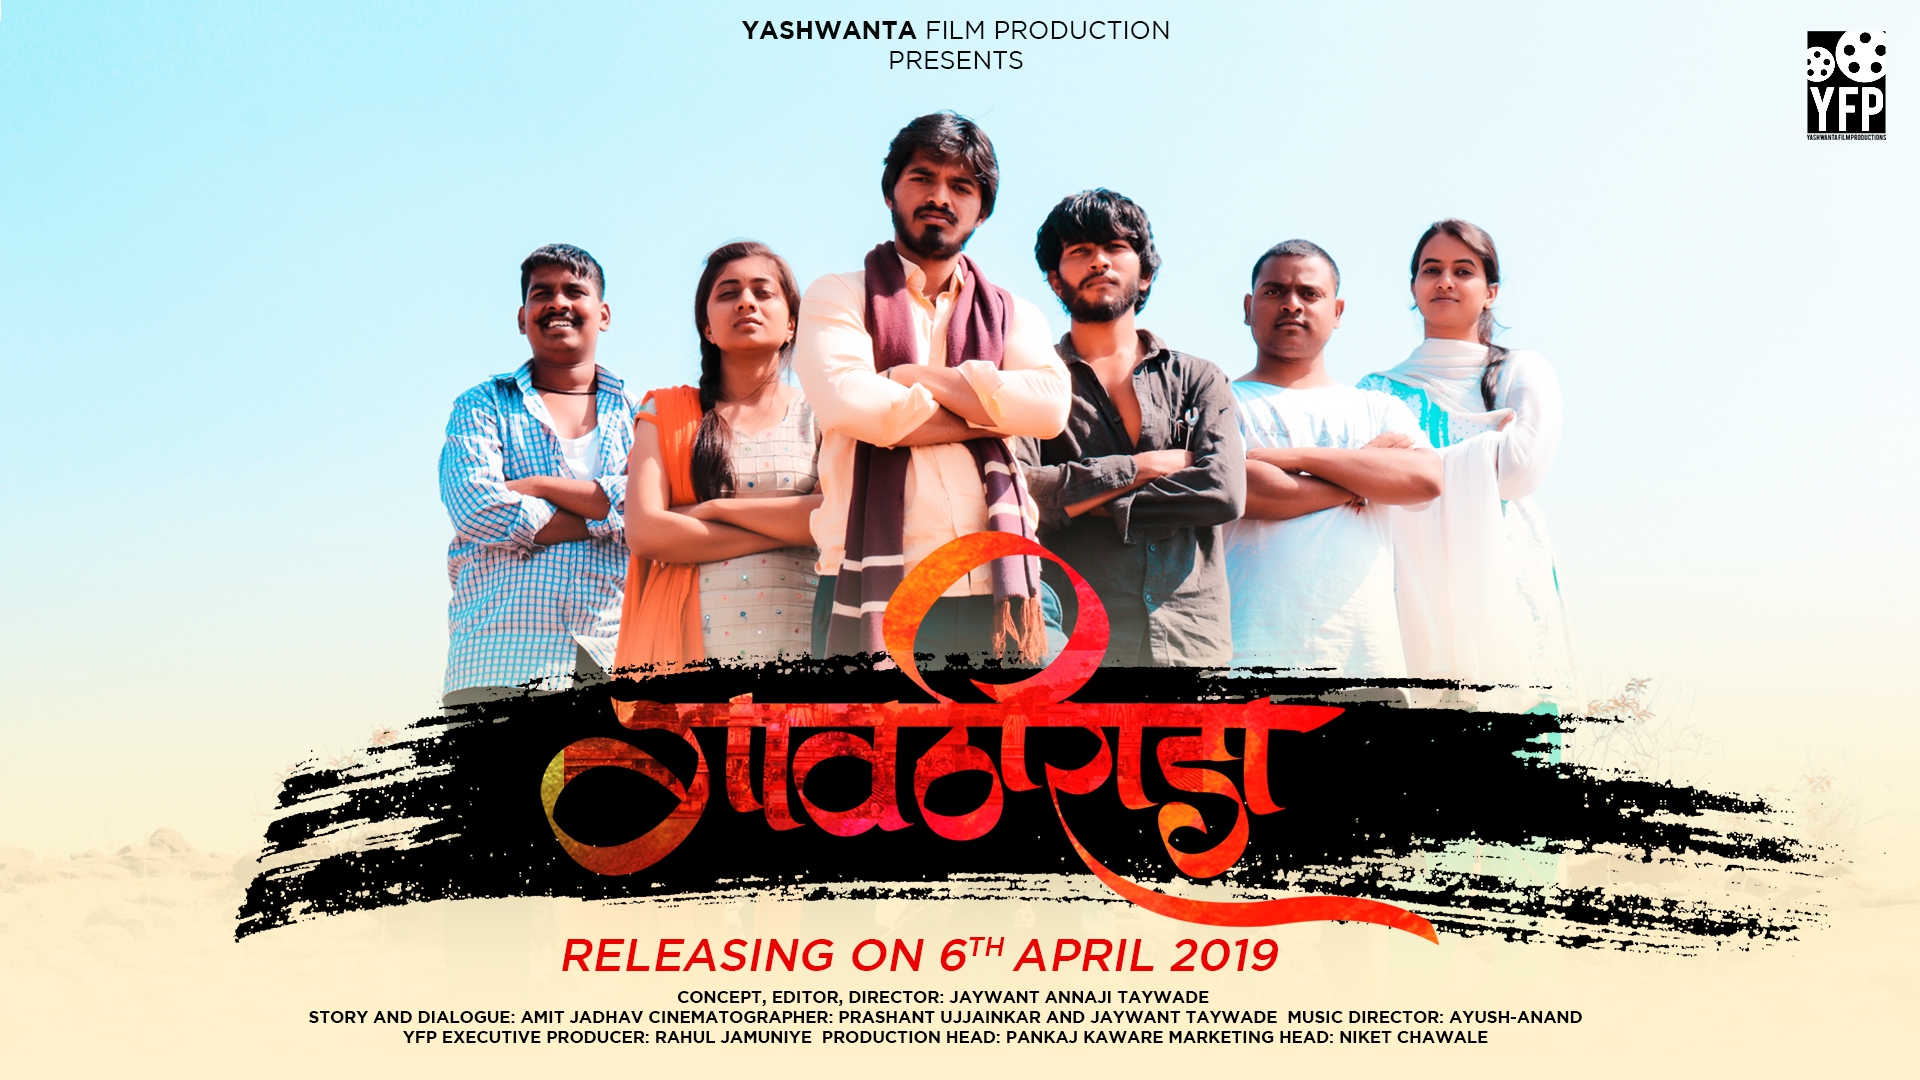 marathi movie,marathi songs,latest marathi movies gavthi rada web series 2019